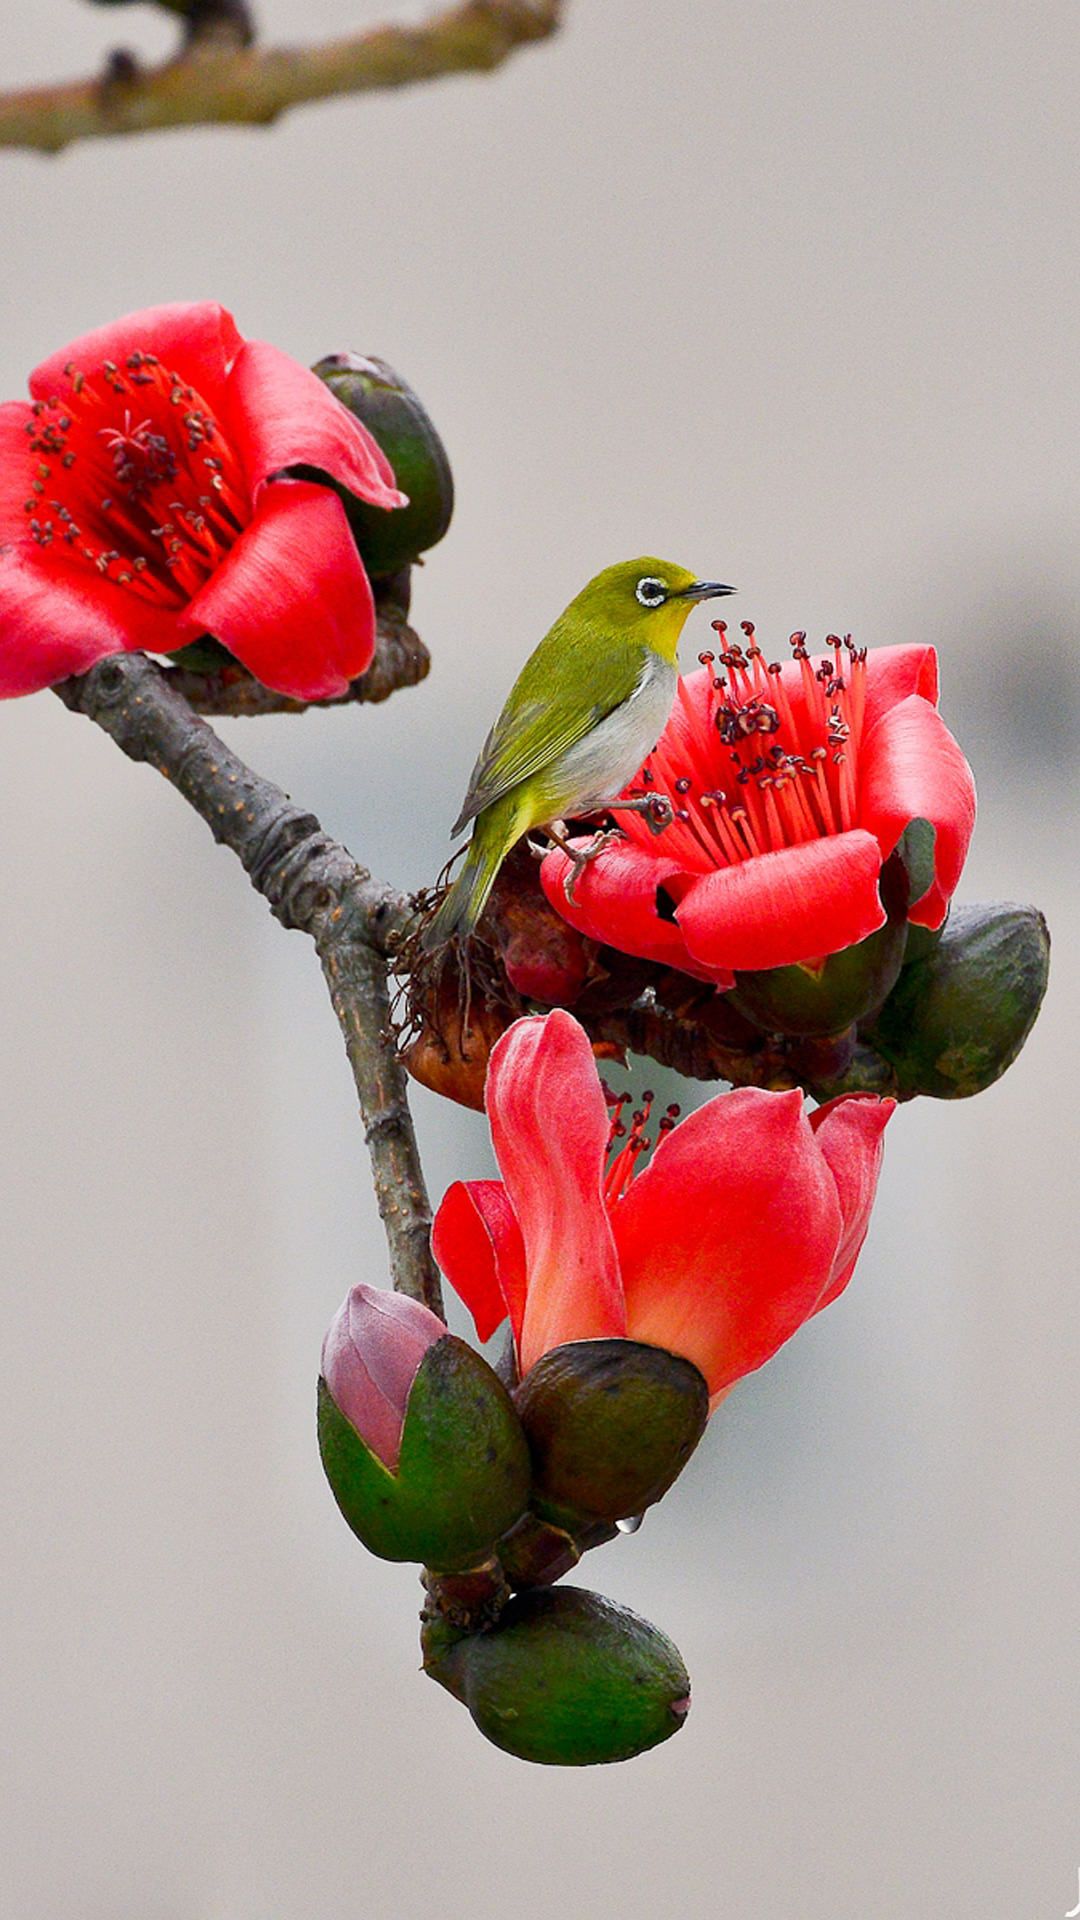 پوستر فوق العاده خوشگل پرنده کنار شکوفه قرمز بهاری